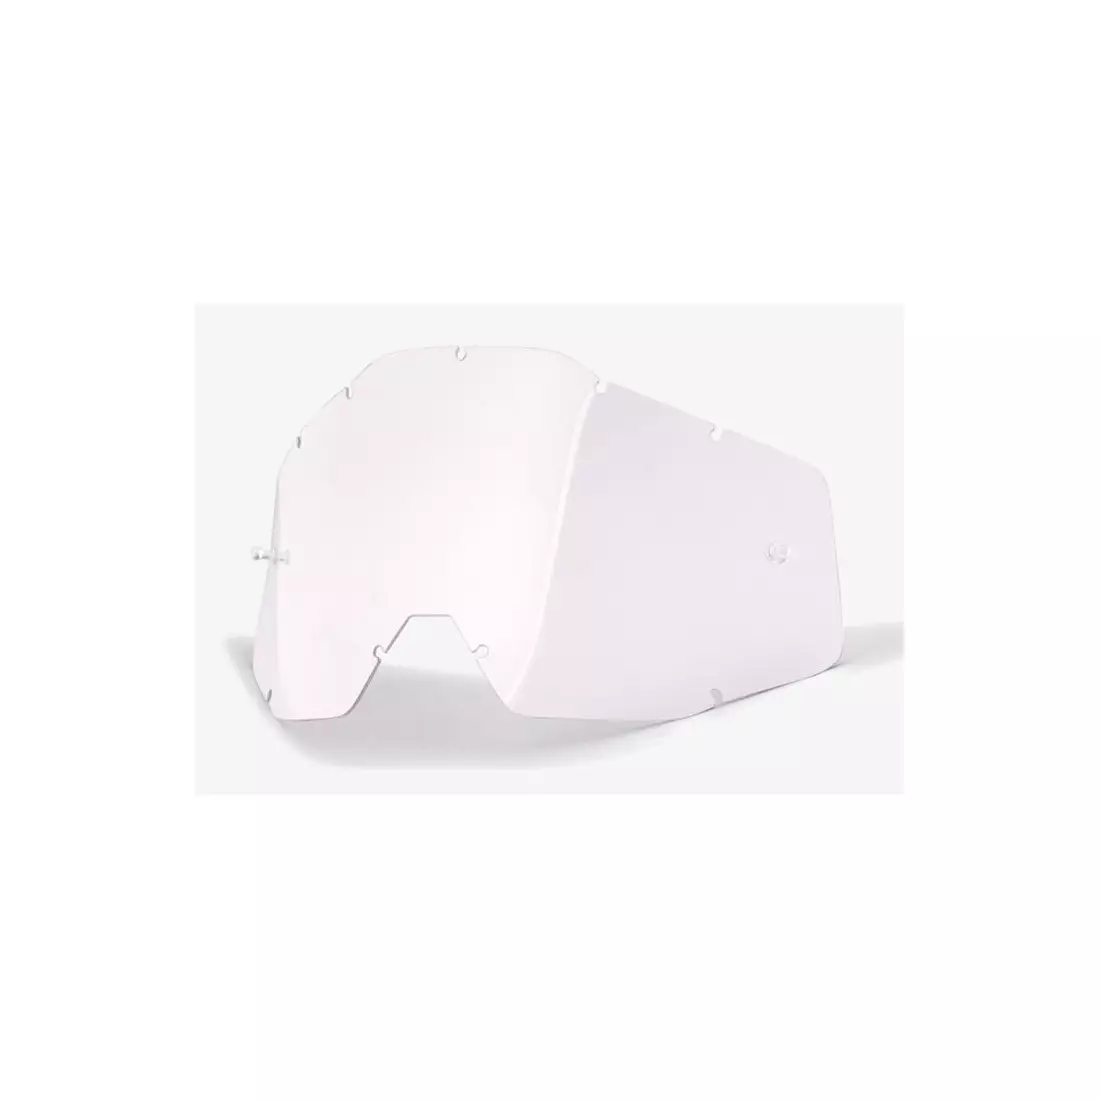 100% brýlová čočka accuri/strata junior (průhledné sklo Anti-Fog) STO-51003-010-02